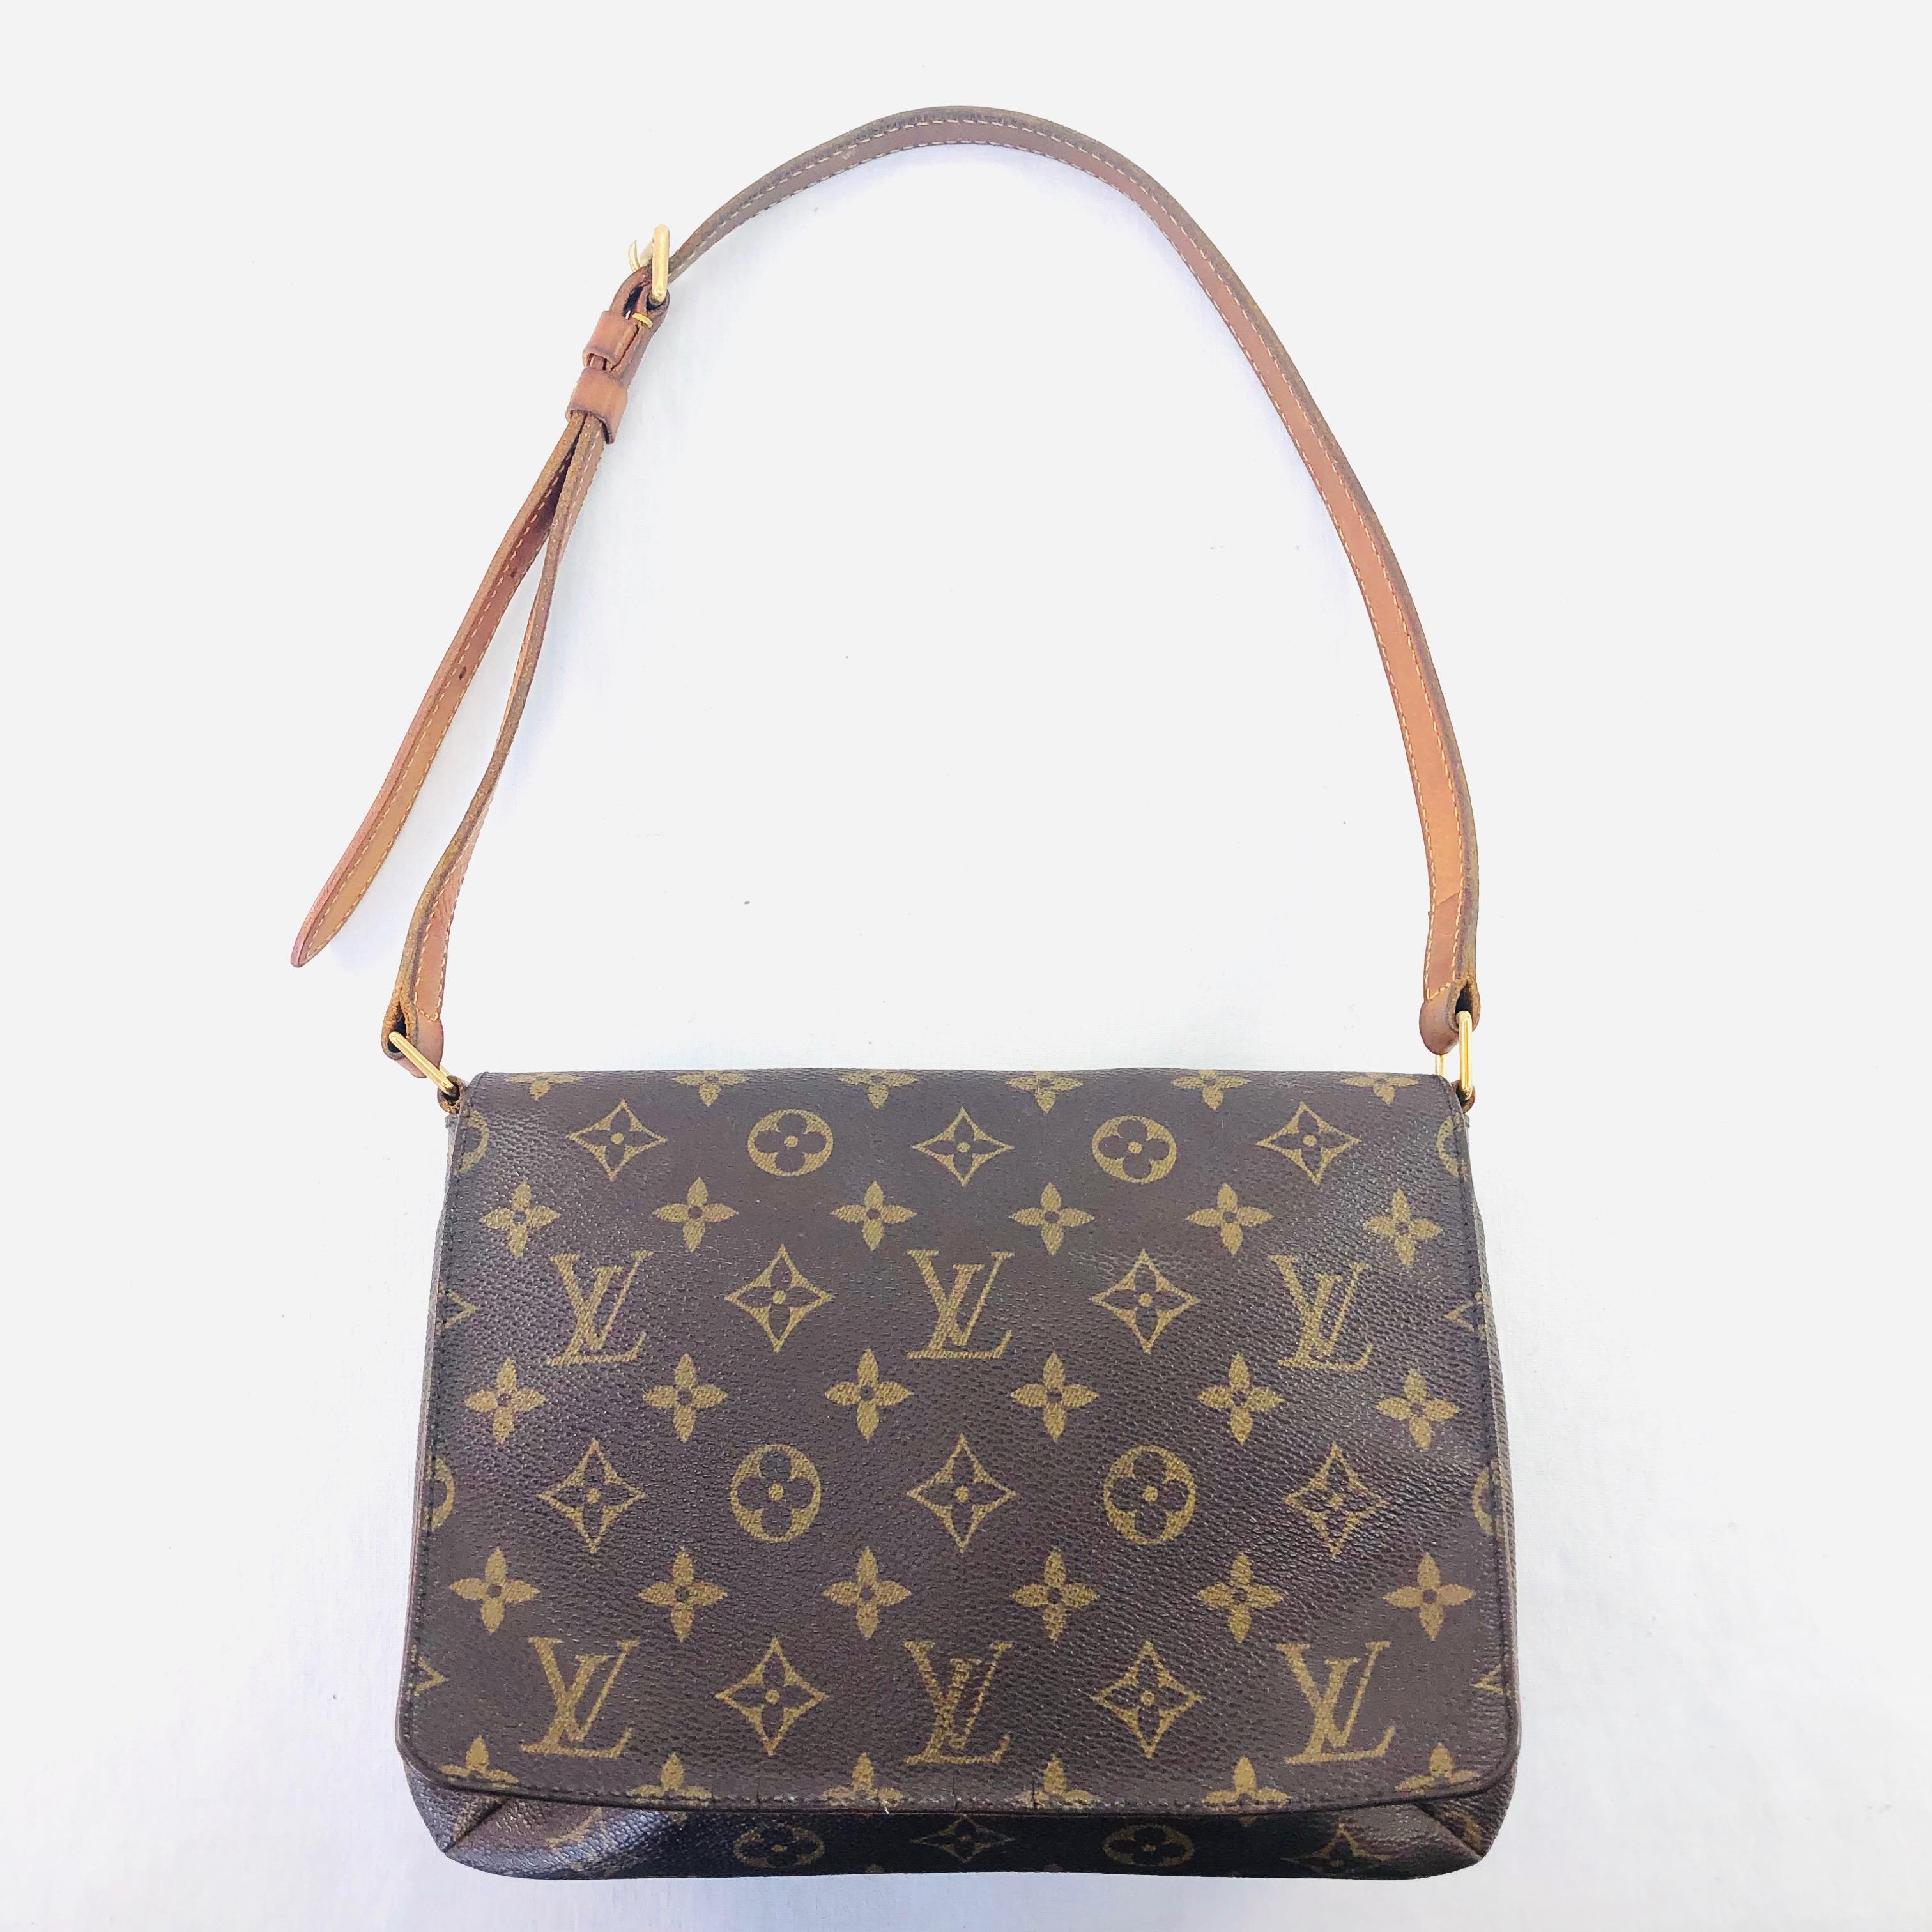 Authentic estate Louis Vuitton "Musette Tango" canvas & leather shoulder bag